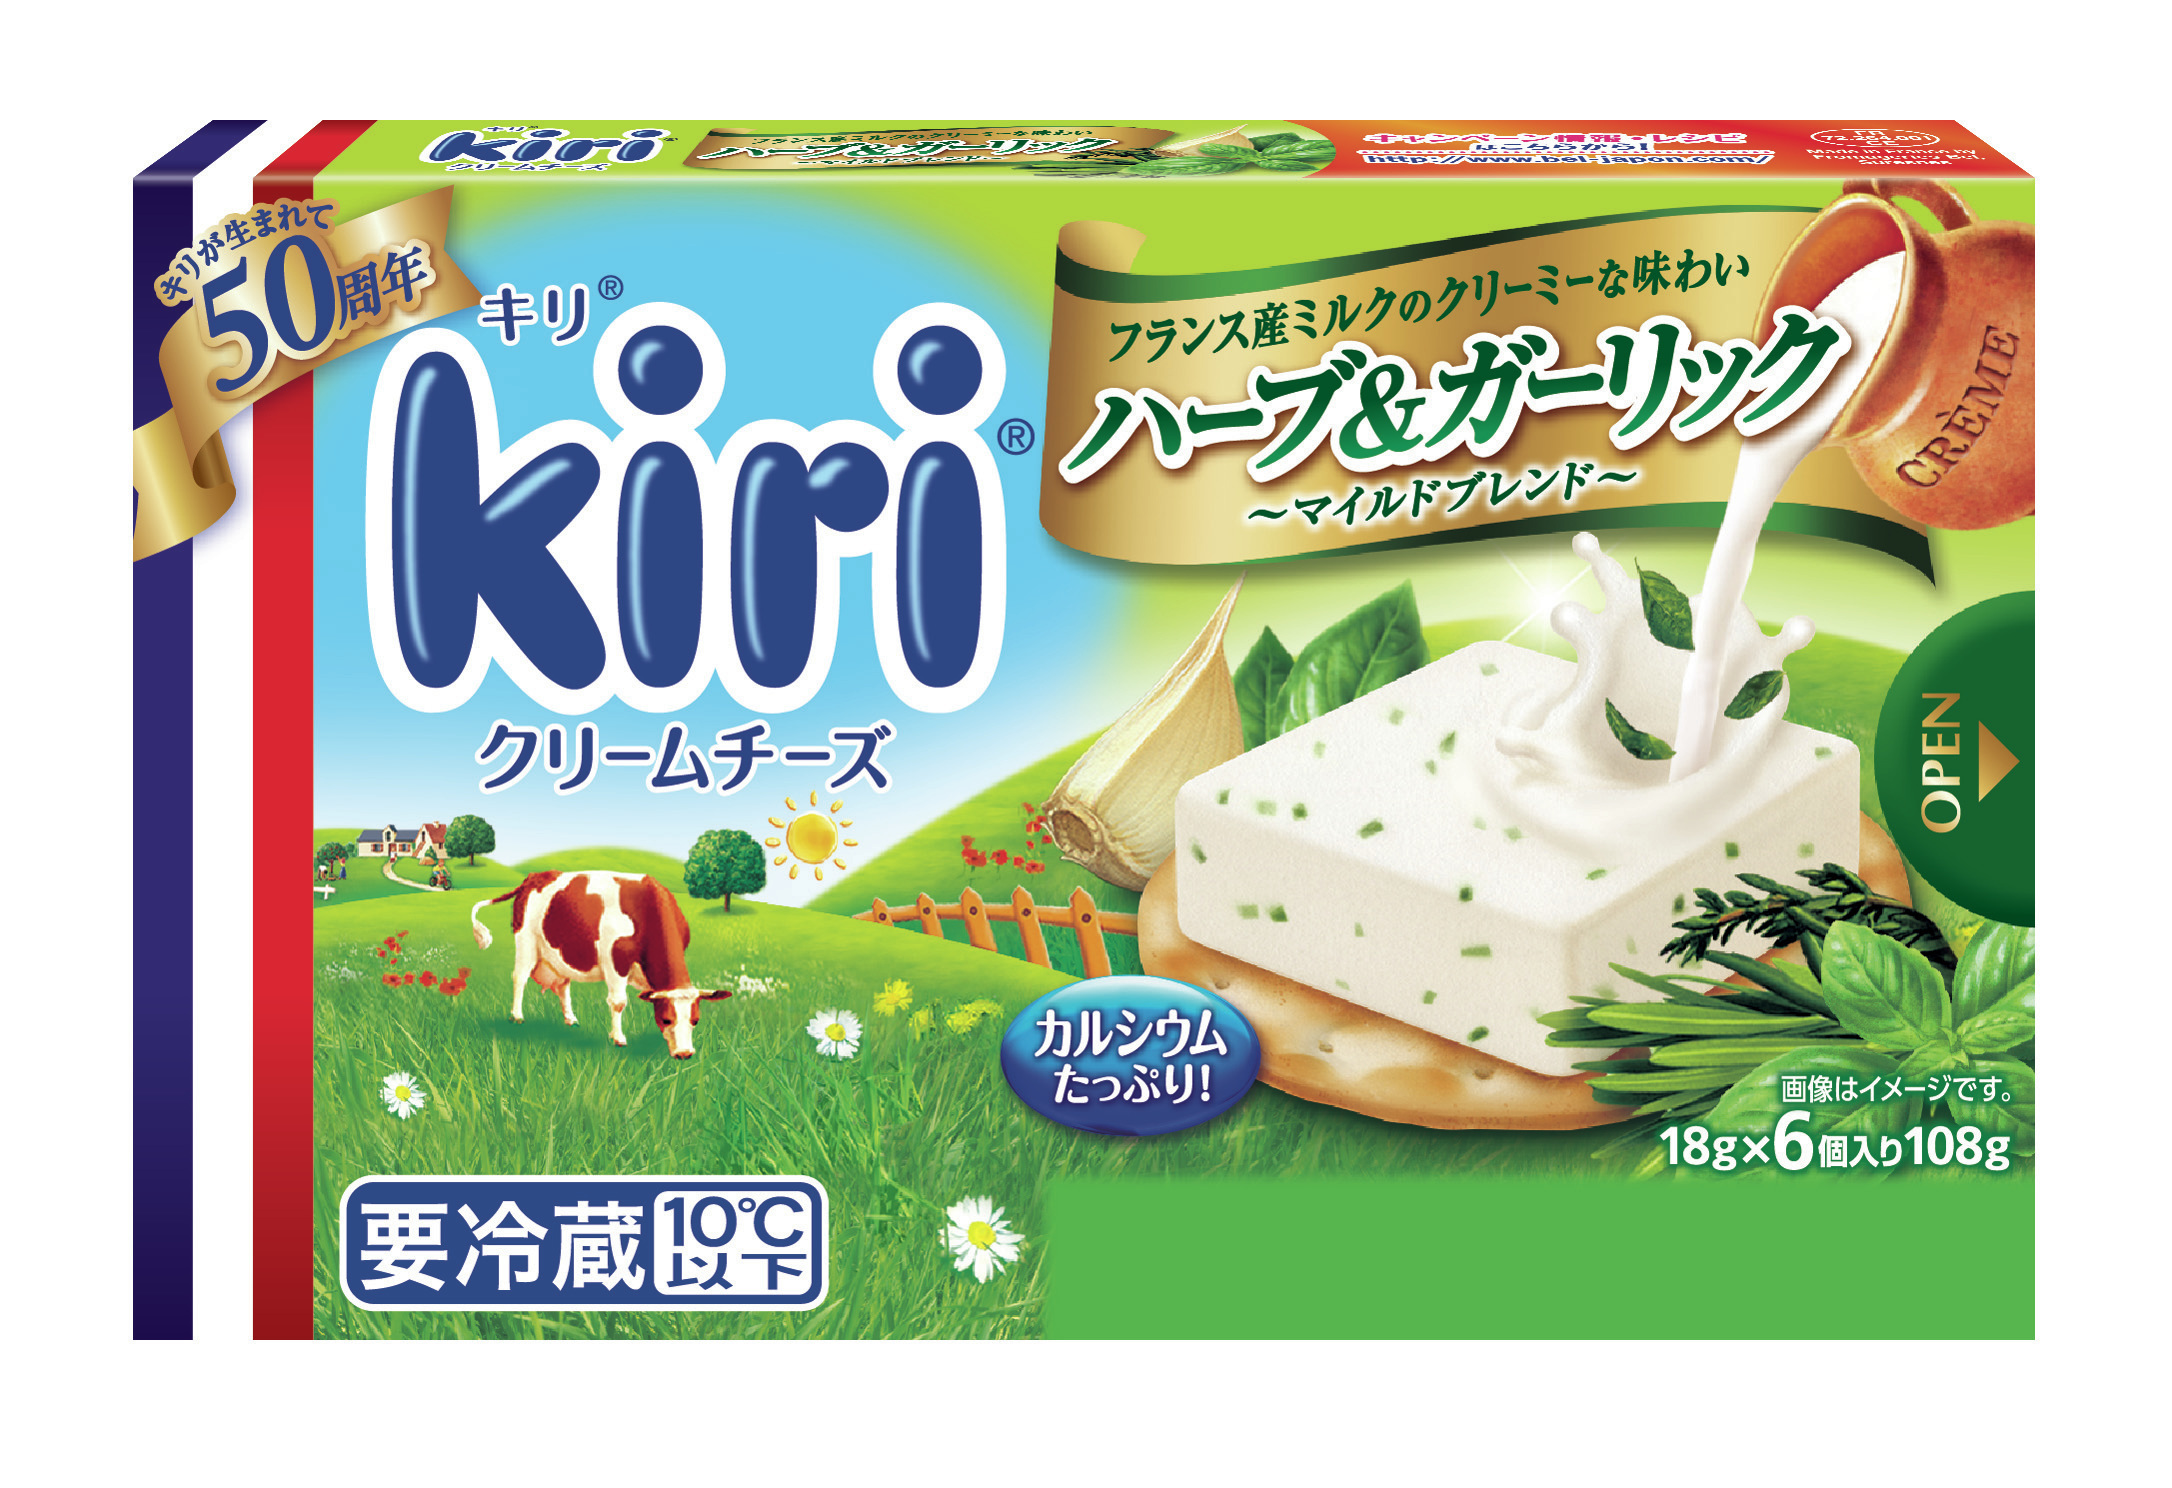 Kiri R 誕生50周年 キリ クリームチーズ ポーションタイプ リニューアル発売 16年2月15日 月 より順次販売開始 ベル ジャポン株式会社のプレスリリース